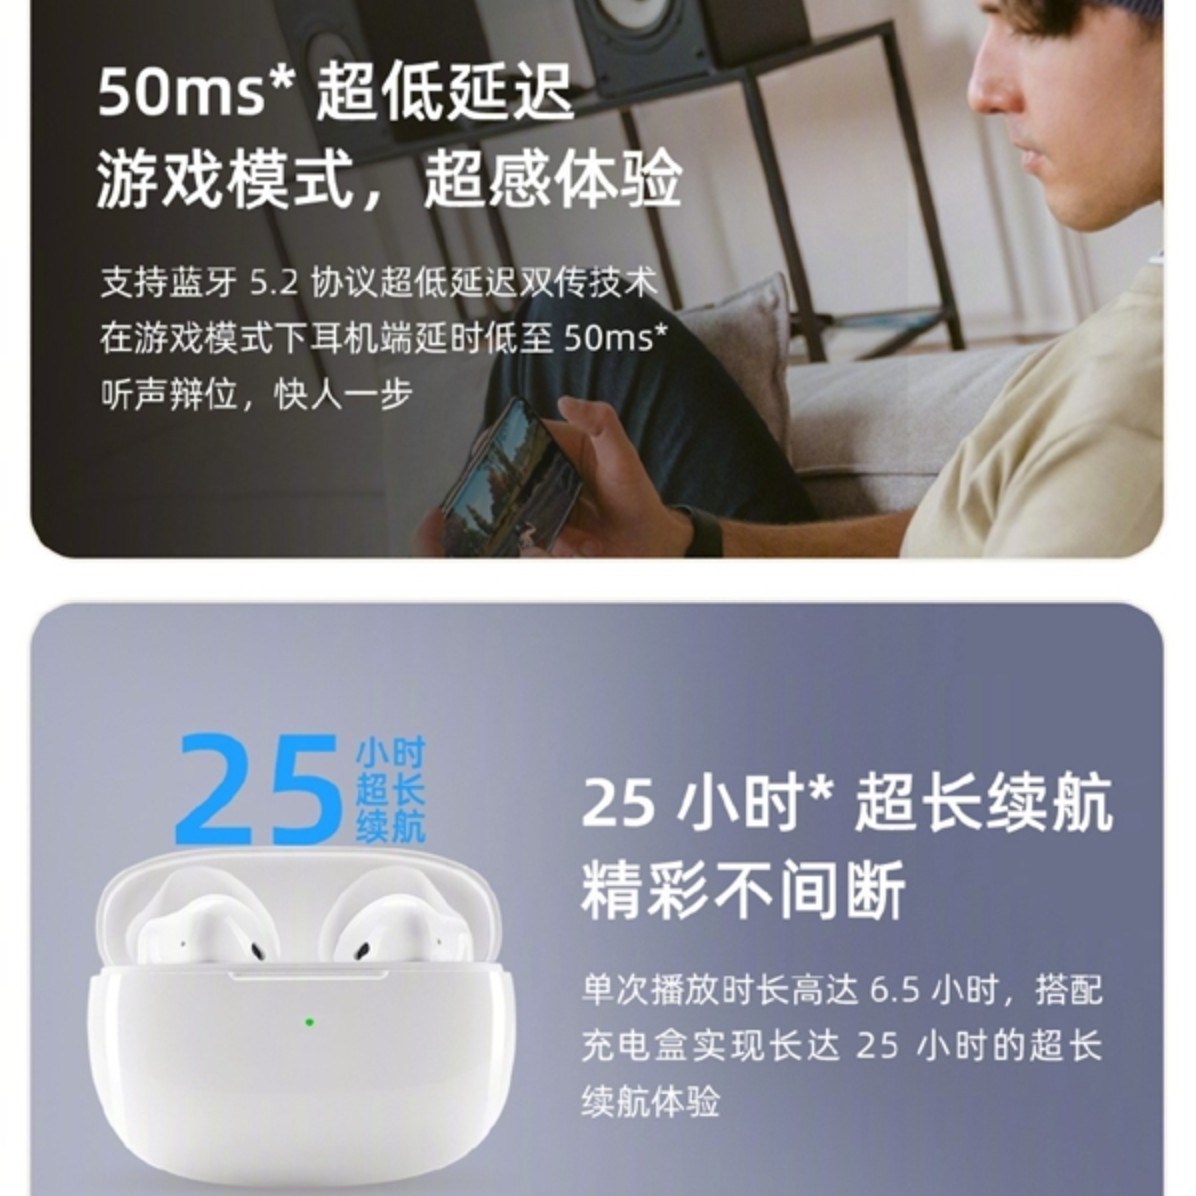 Meizu'dan AirPods 3 tasarımlı kablosuz kulaklık geldi